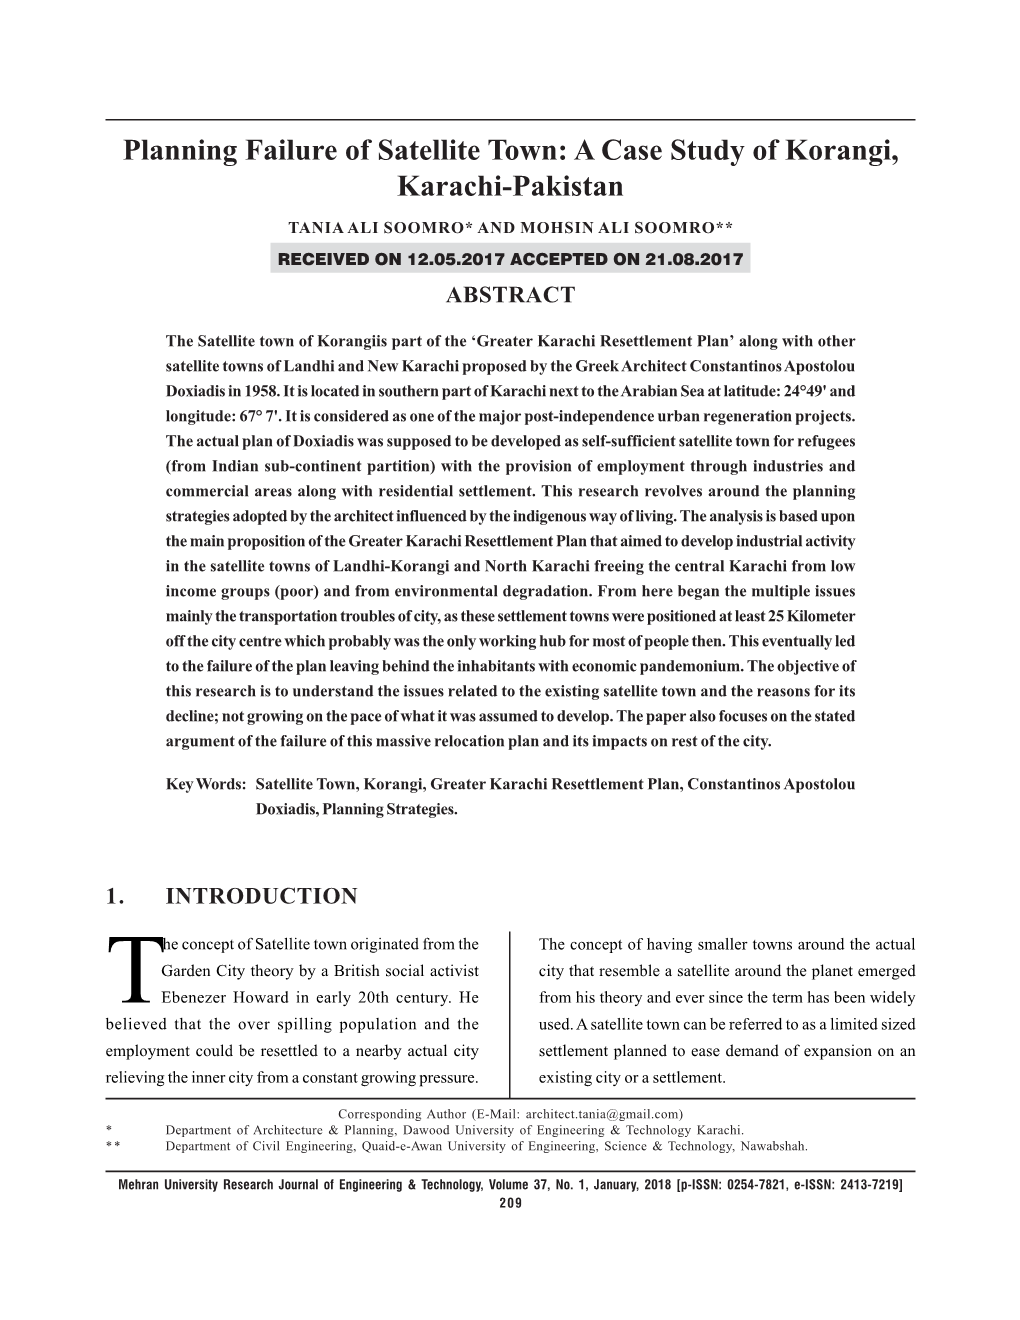 Planning Failure of Satellite Town: a Case Study of Korangi, Karachi-Pakistan